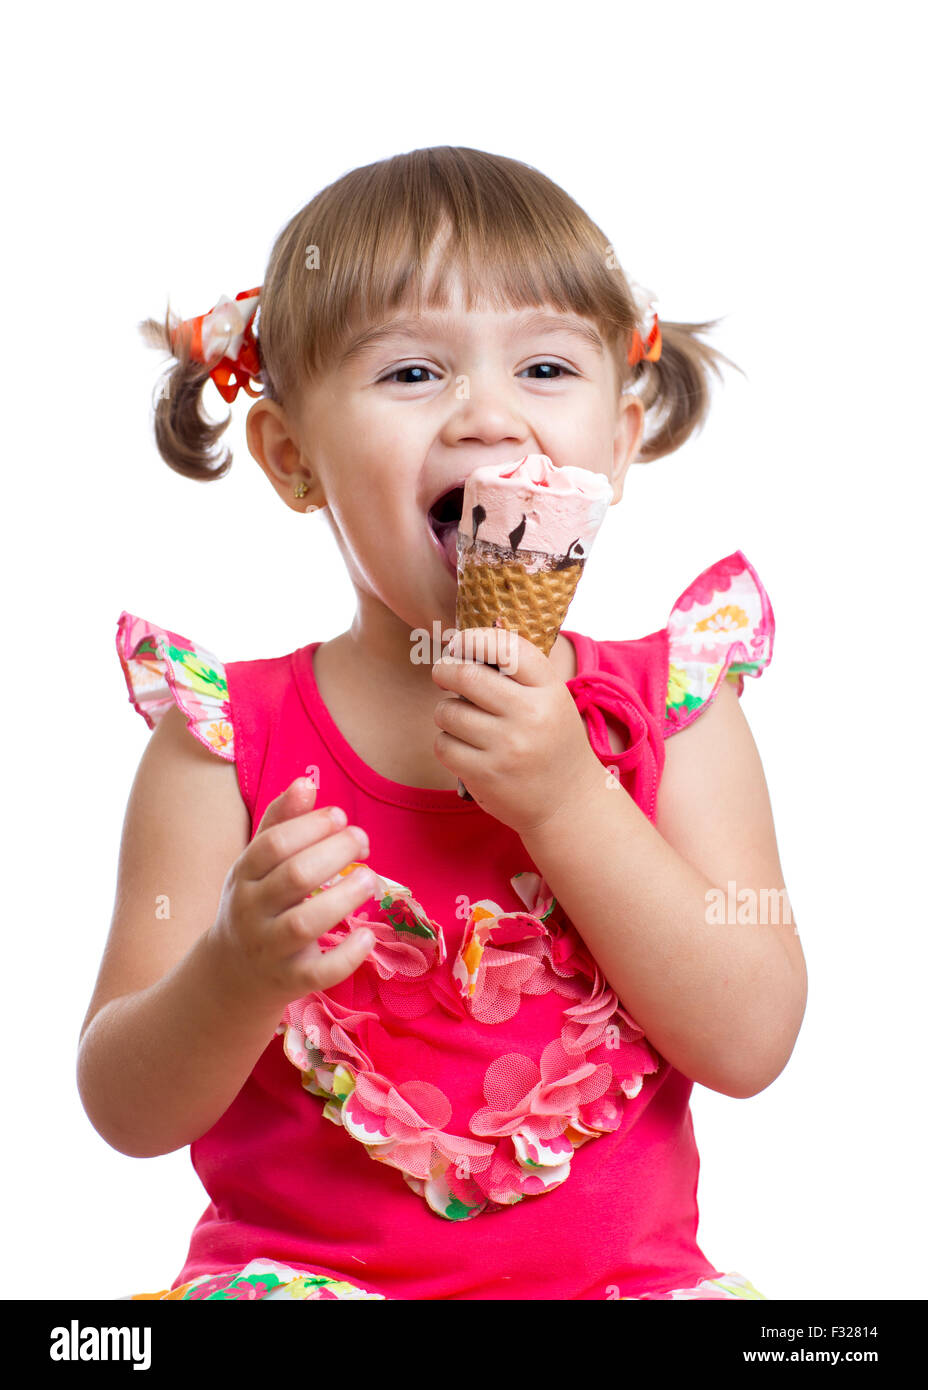 child eating ice cream in studio isolated Stock Photo